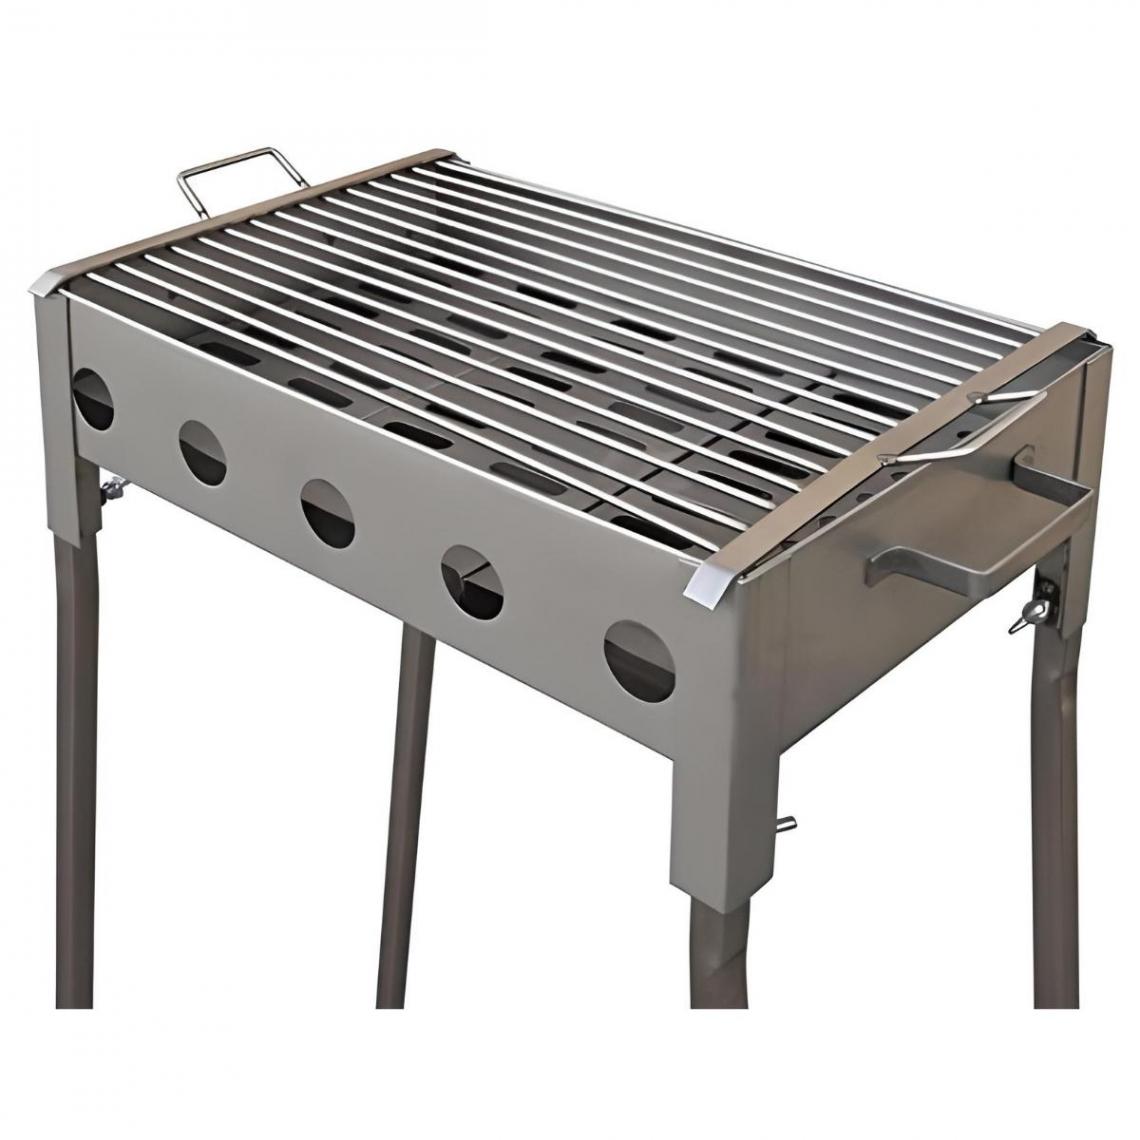 Visiodirect - Barbecue rectangulaire en acier inoxydable coloris Gris - 33 x 33 x 60 cm - Barbecues charbon de bois